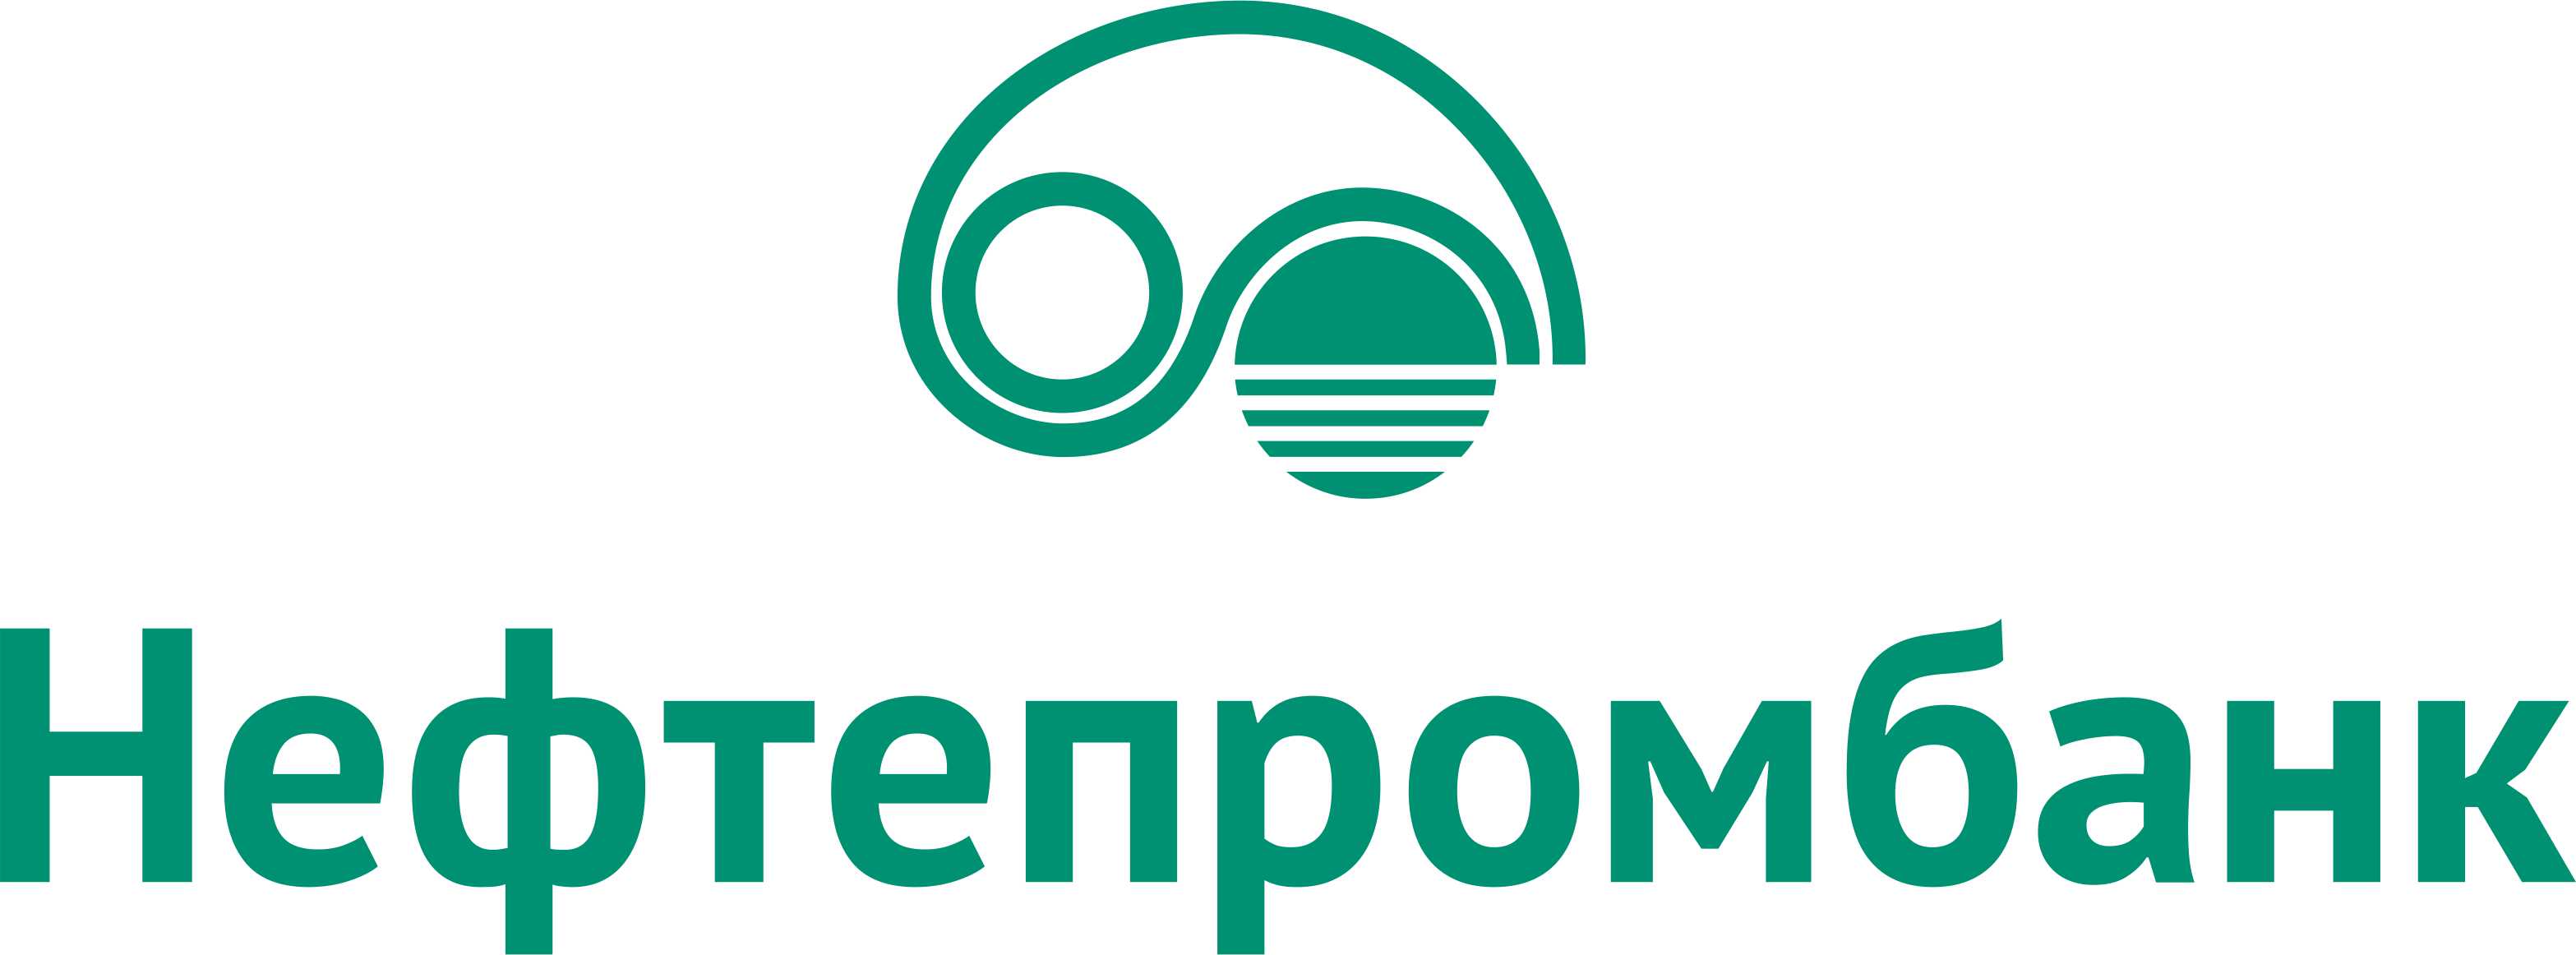 Nefteprombank logo